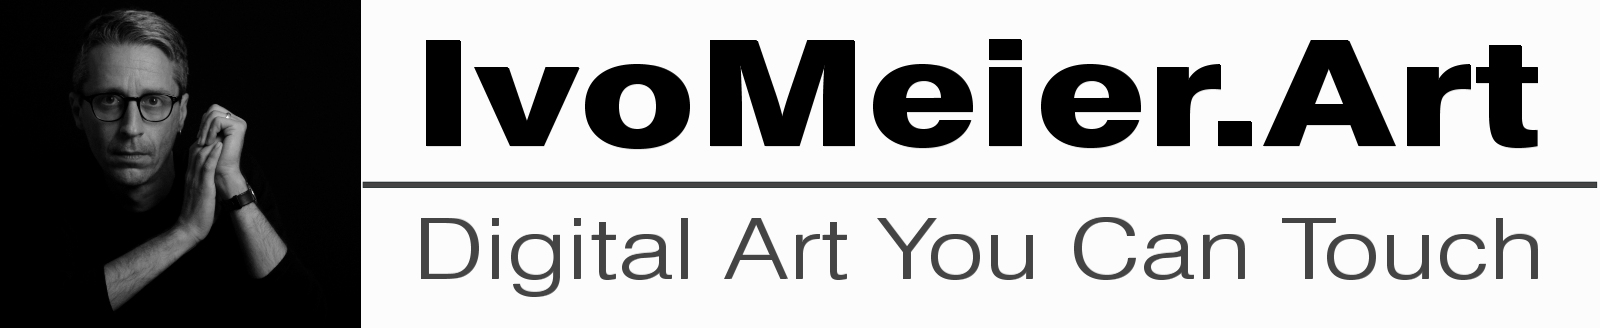 IvoMeier.Art - Digital Art You Can Touch (Logo)